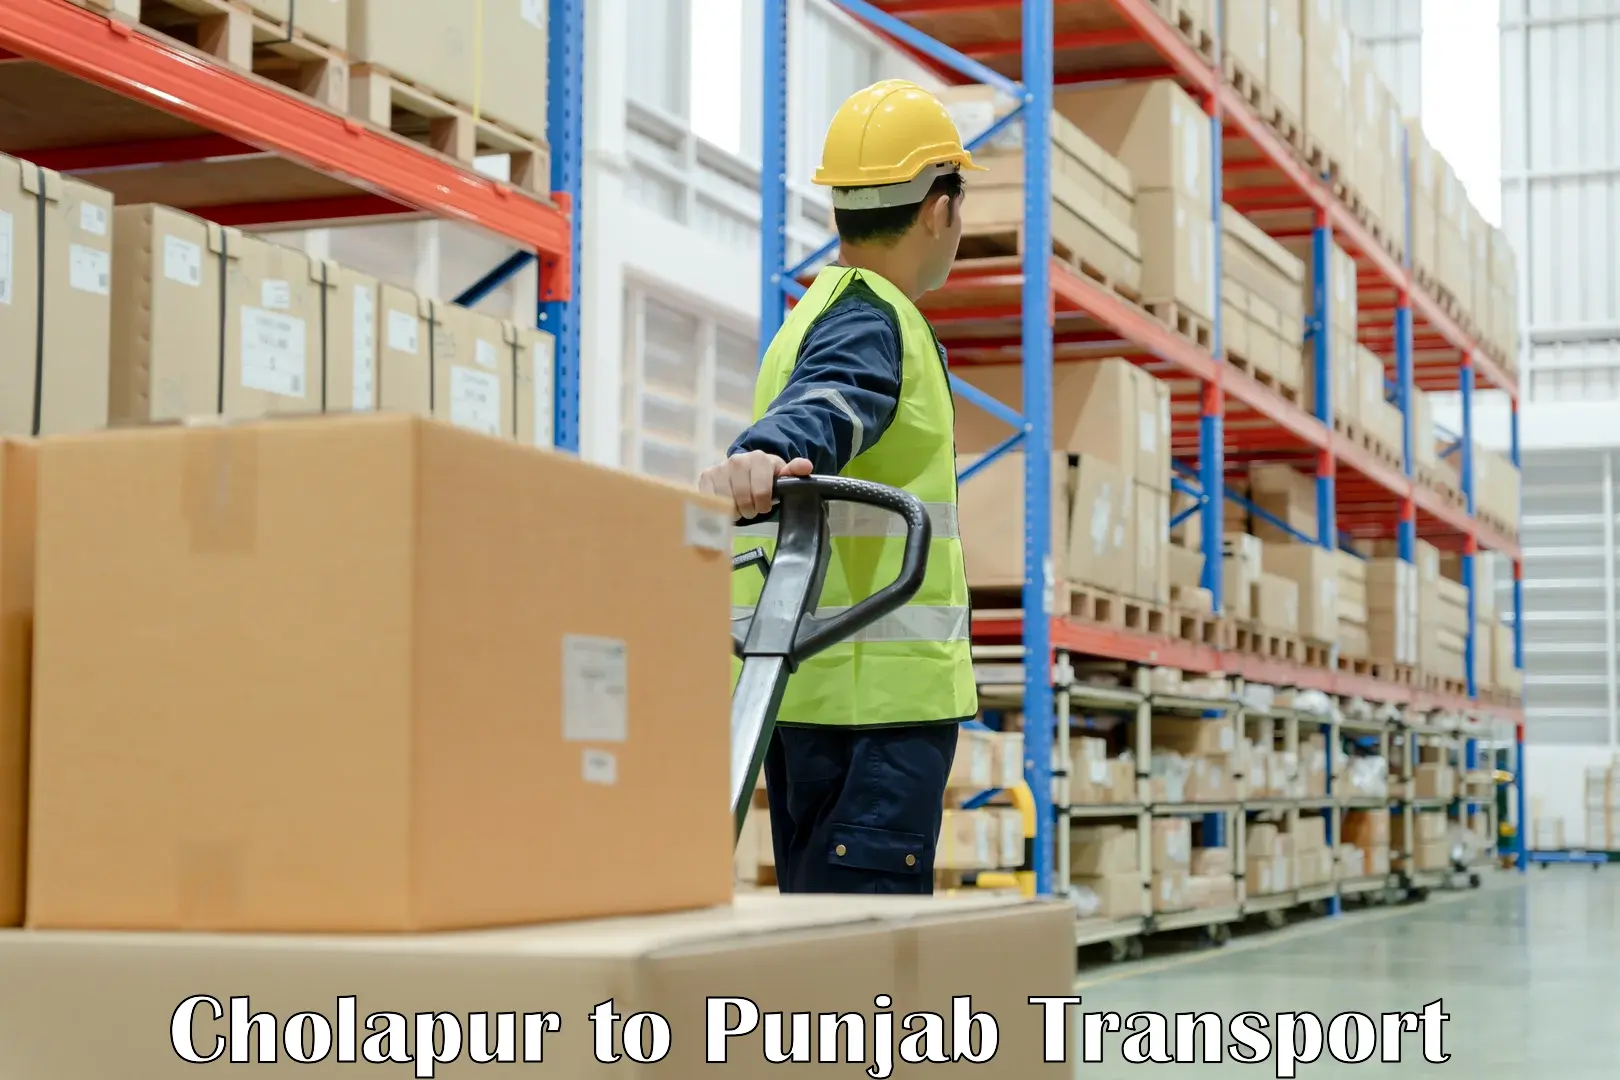 Parcel transport services Cholapur to Ropar